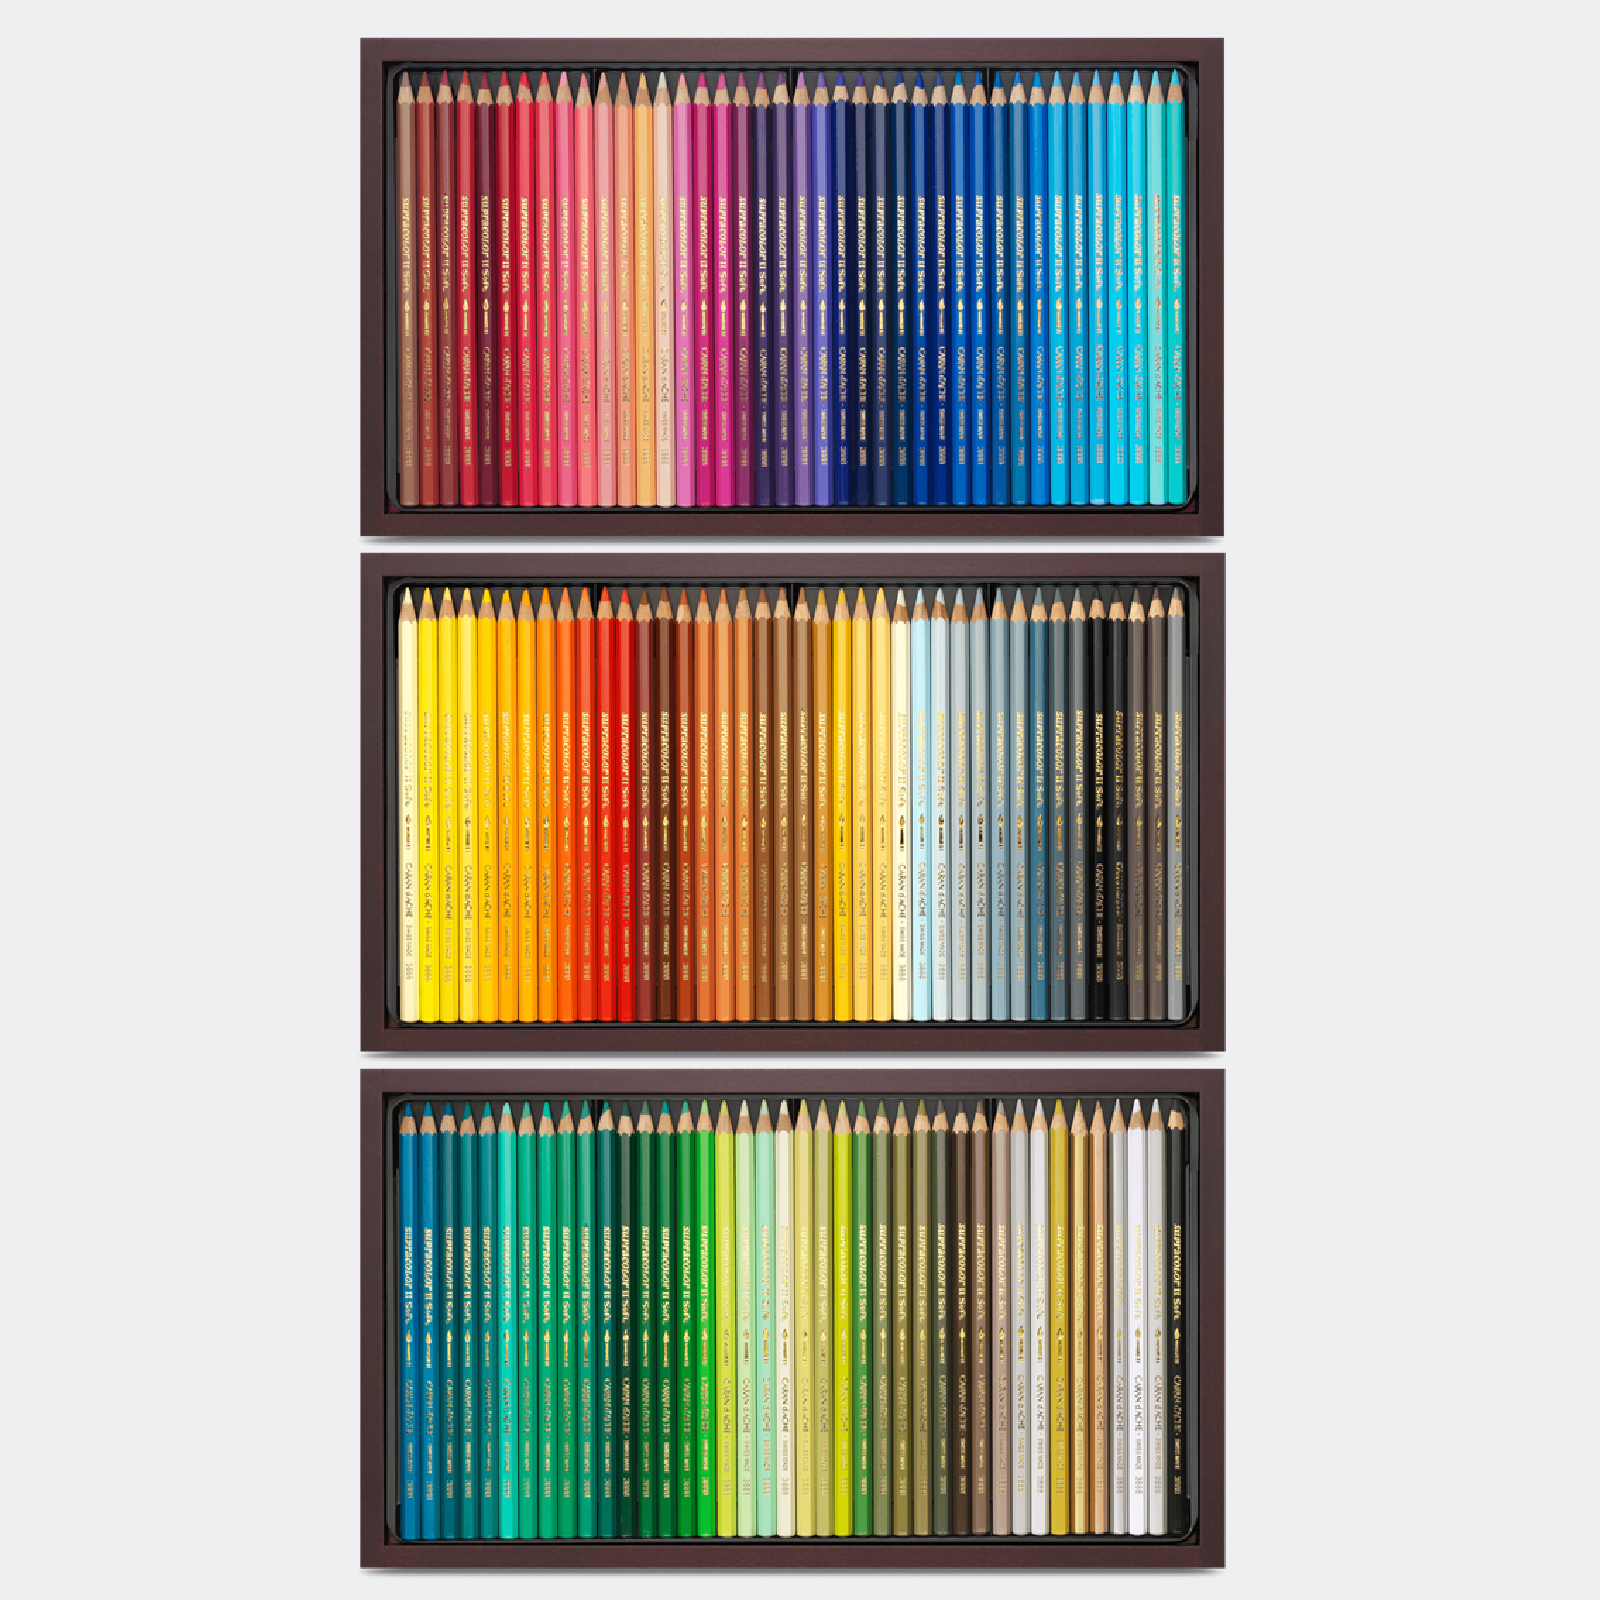 Cassetta legno 120 matite colorate Supracolor Aquarelle Caran d'Ache -  Pellegrini Brera - La Bottega d'Arte di Milano